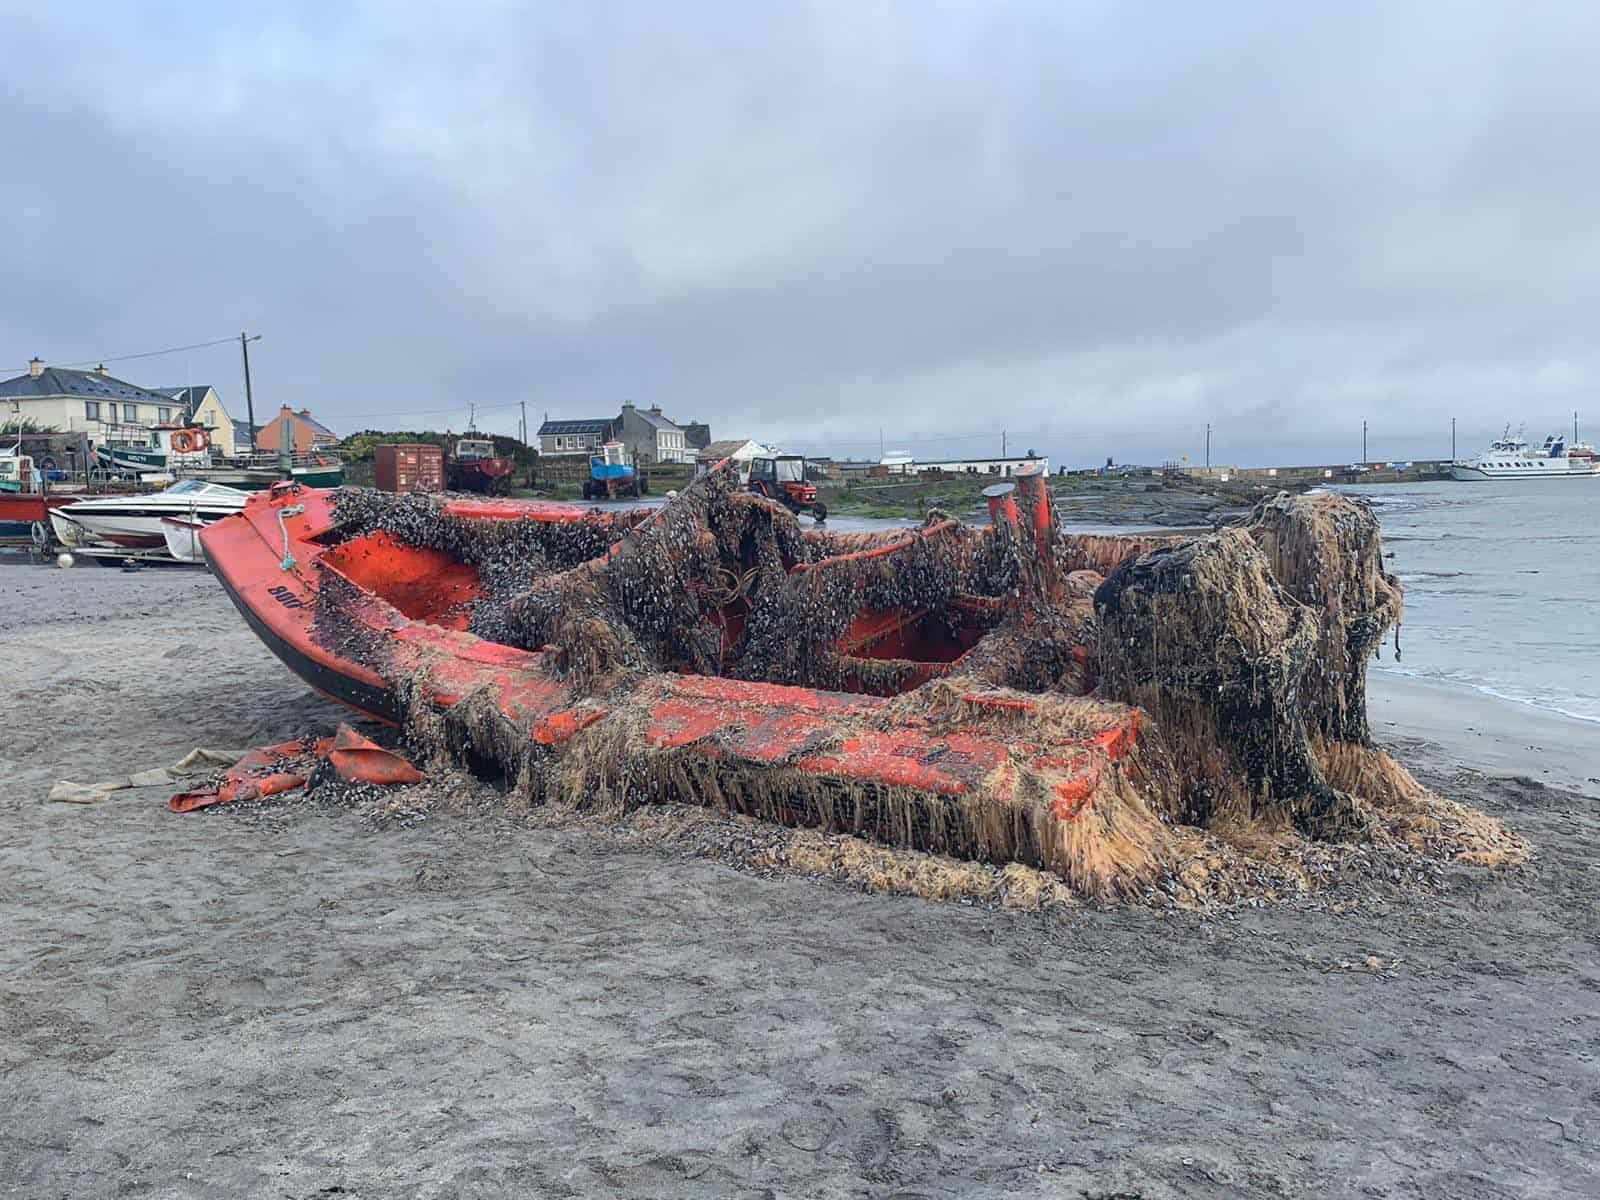 American coastguard boat washes up on Ireland’s west coast